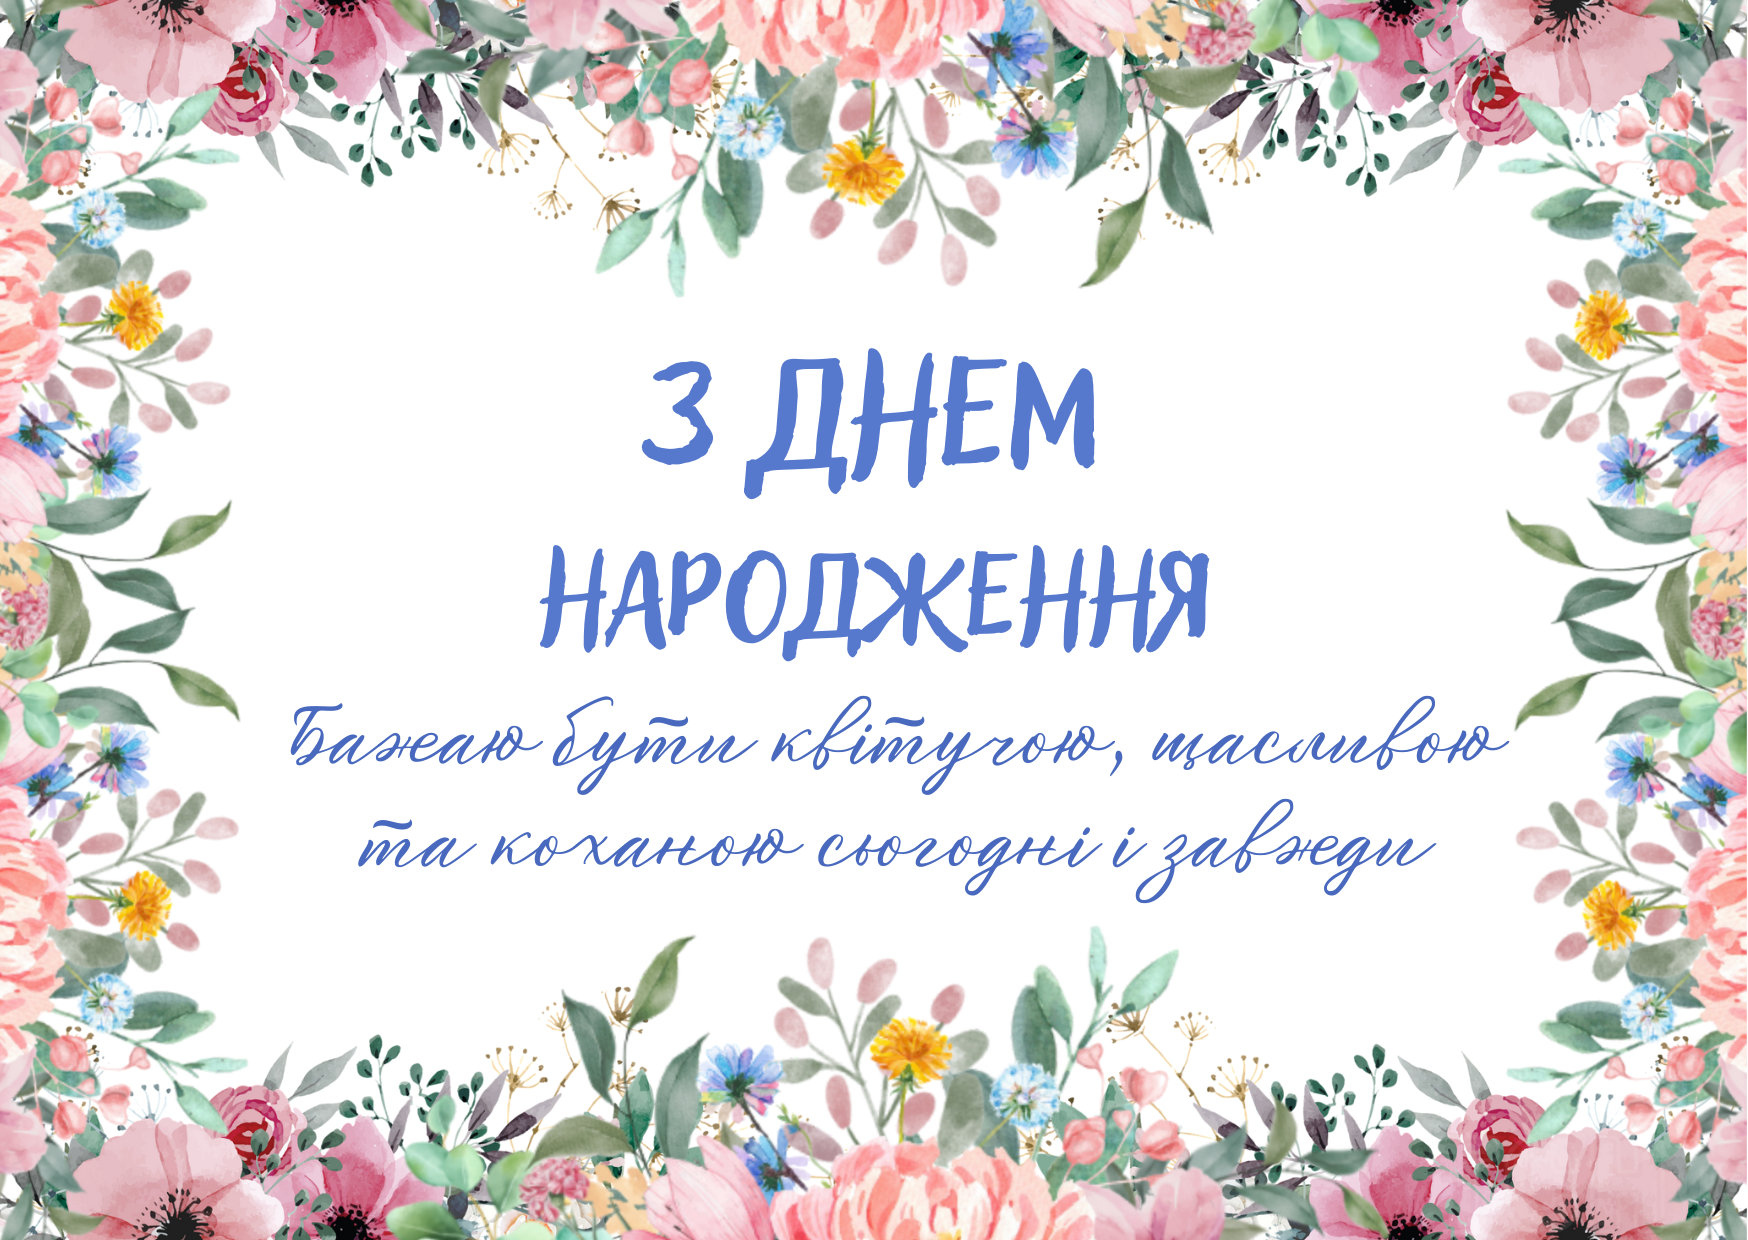 Стихи и поздравления на День рождения | Цветочный блог | Дзен